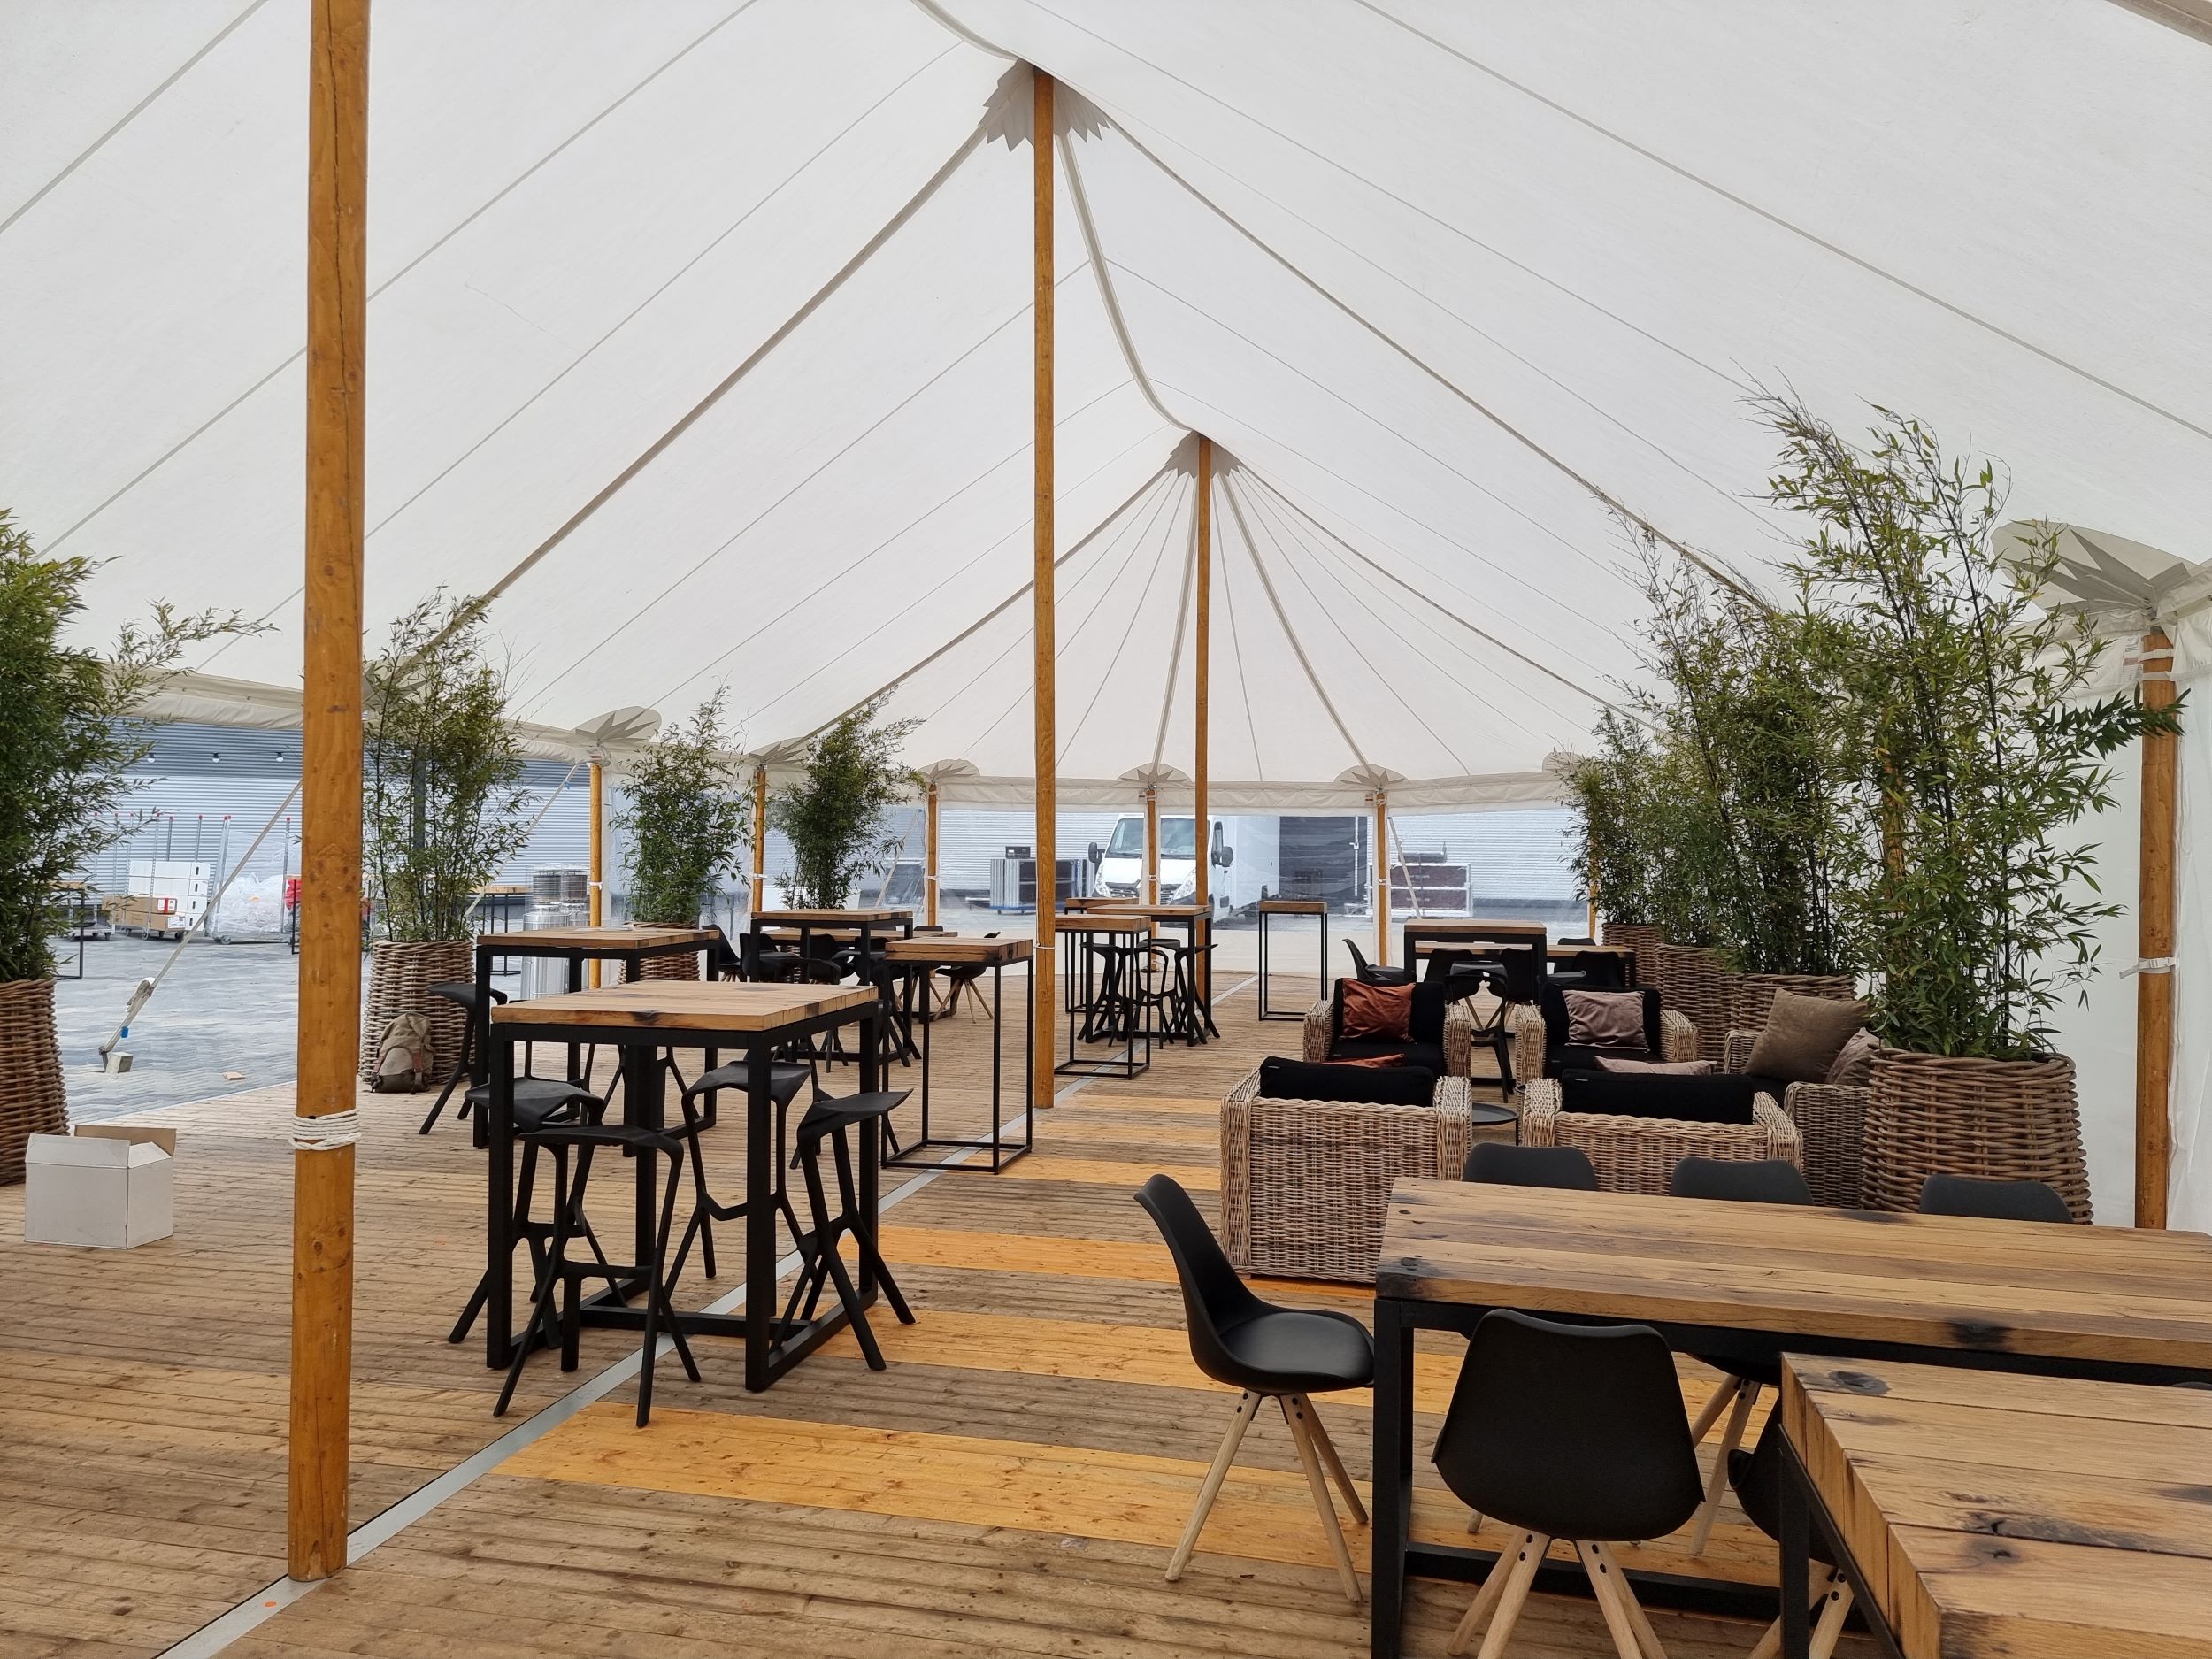 Alphatentevent-luxury dream tent-10x22 meter-Rotterdam-bedrijfsevent-zakelijk event-totaal concept-koolhaasconcepts-01